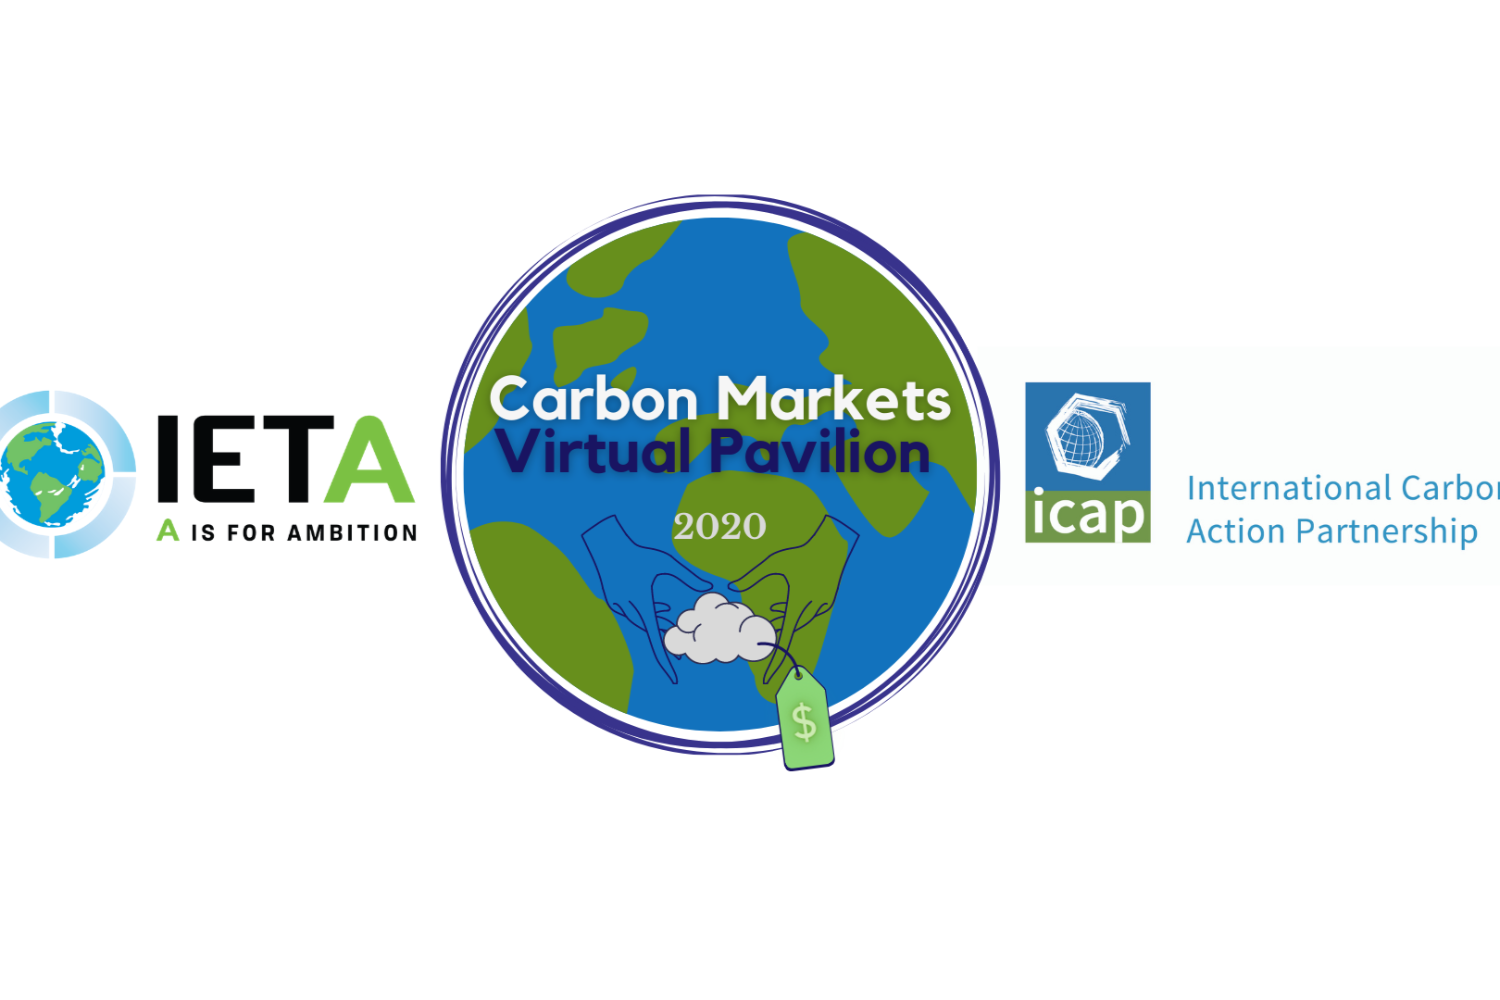 Pabellón Virtual de los Mercados de Carbono IETA/ICAP